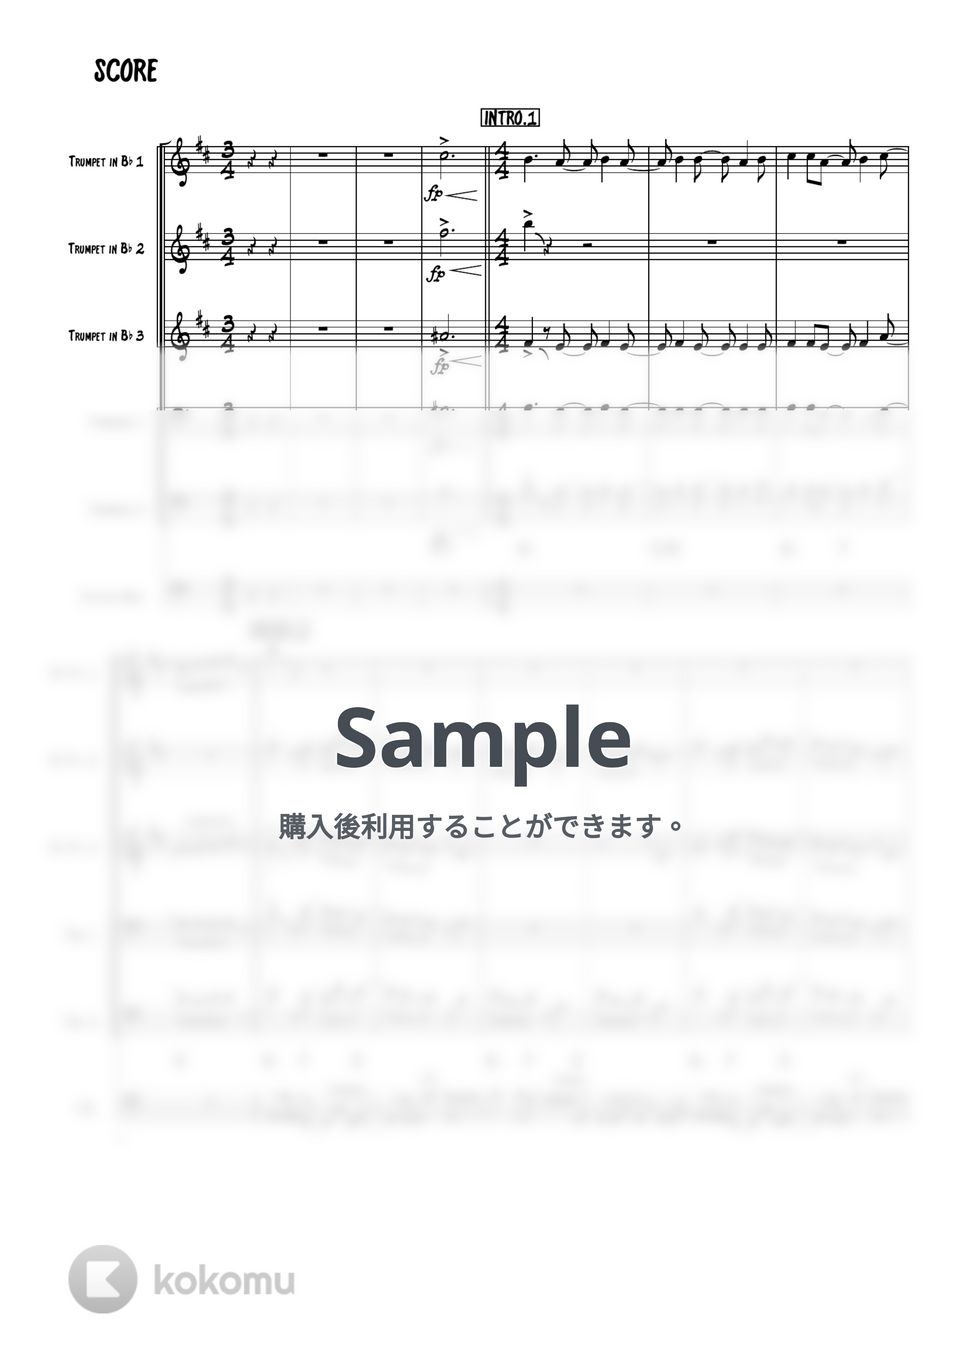 鬼滅の刃 - 残響散歌 (トランペット、トロンボーンアンサンブル) by 高田将利